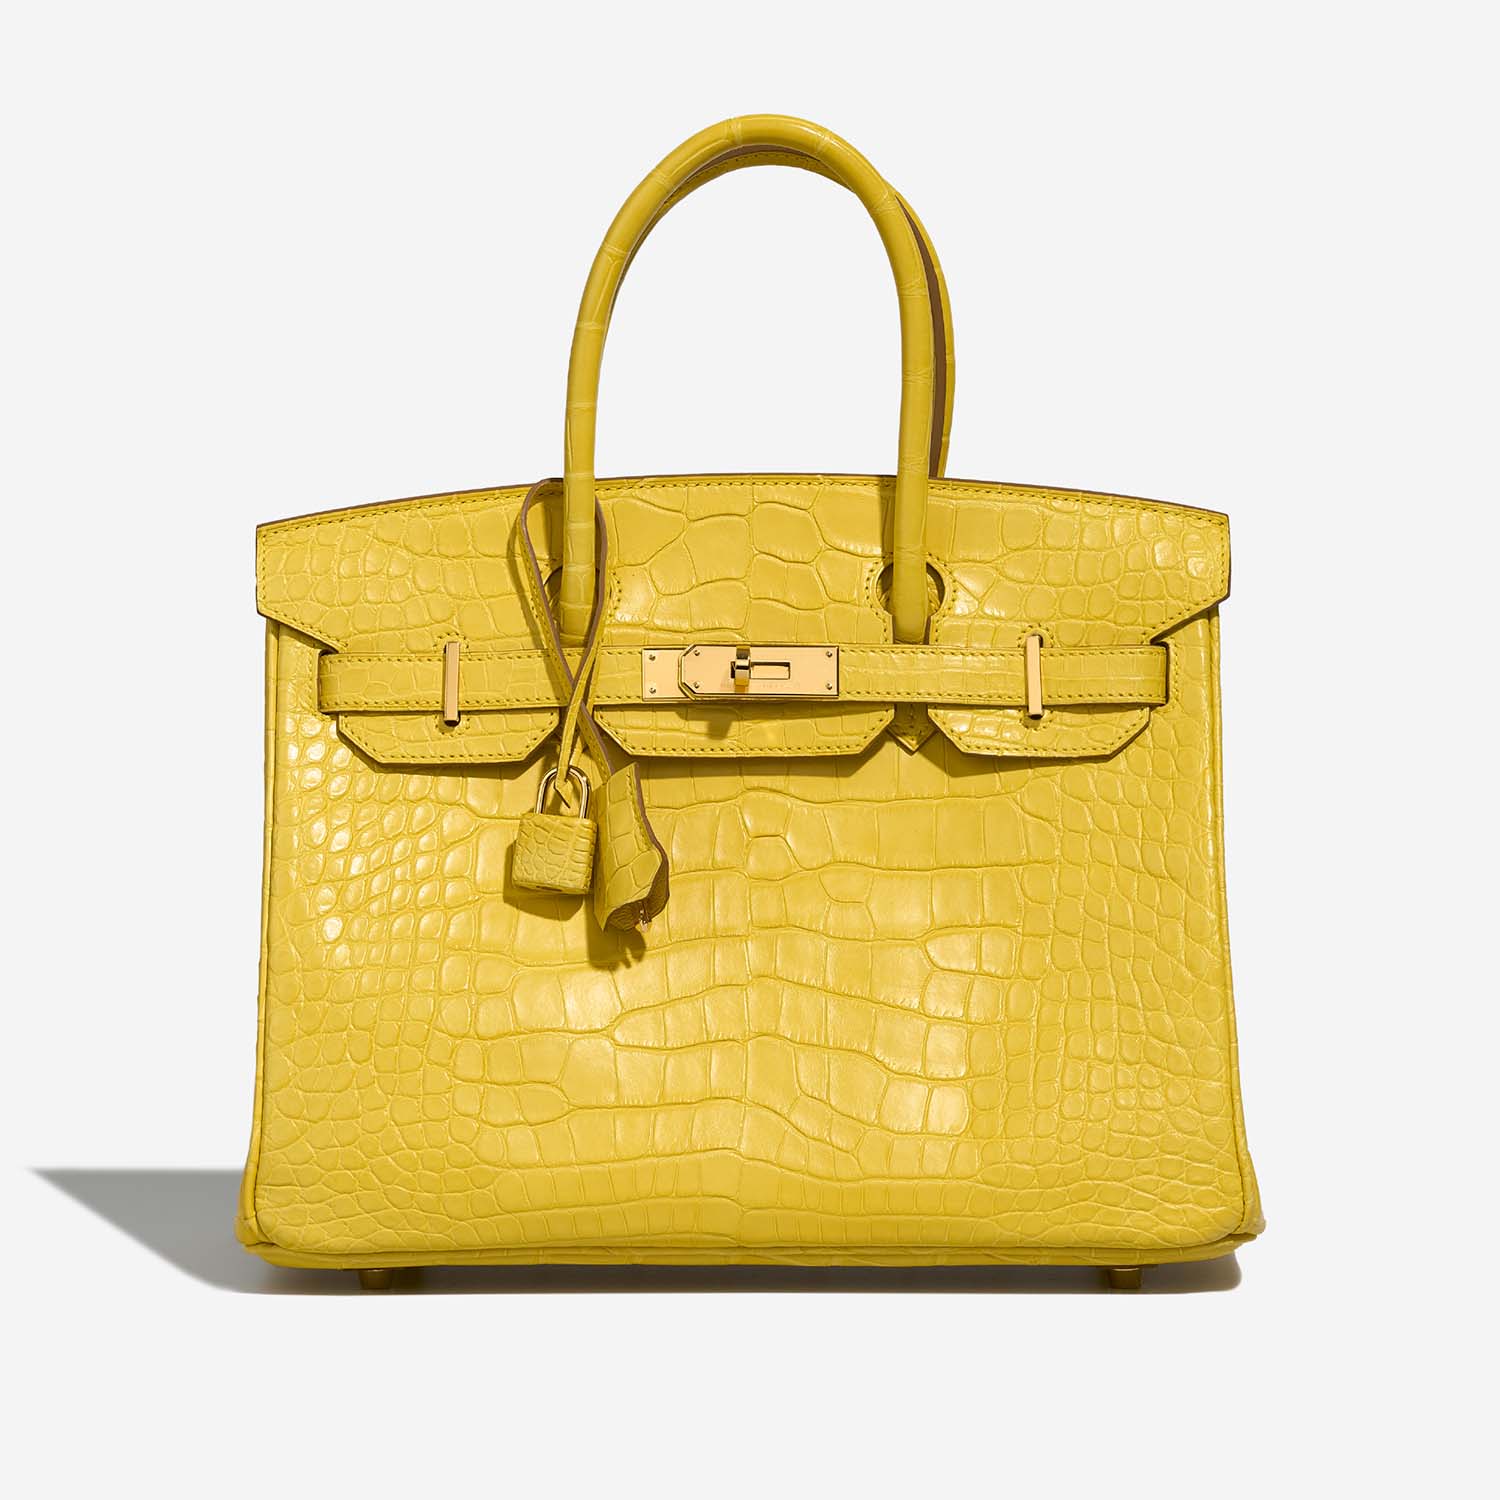 Hermès Birkin 30 Mimosa Front | Verkaufen Sie Ihre Designer-Tasche auf Saclab.com